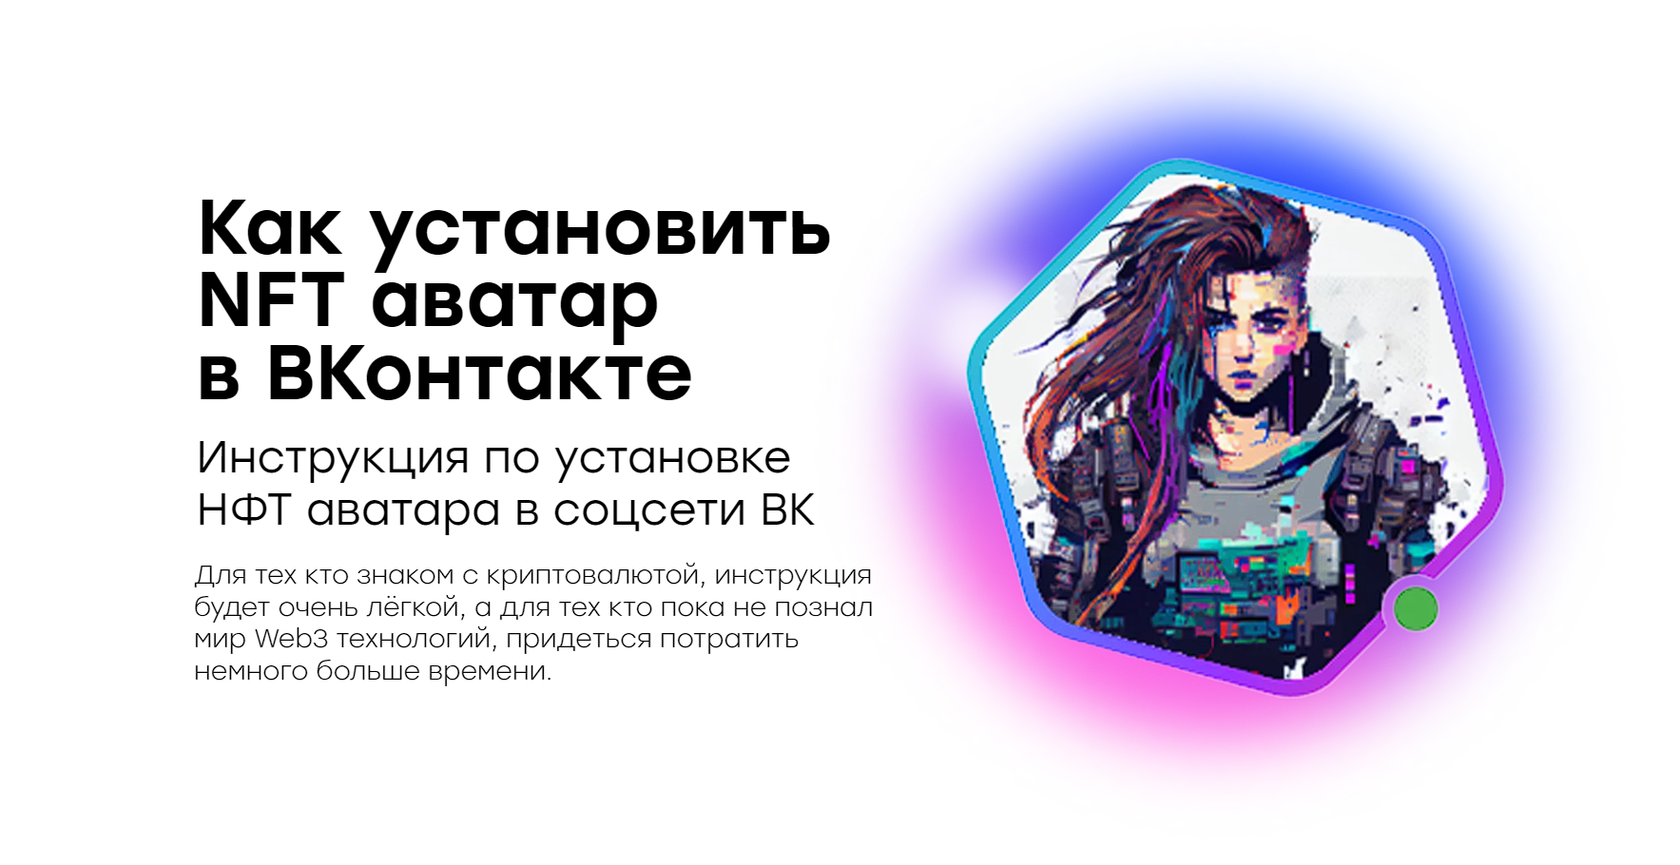 Не грузятся фото ВКонтакте: исправьте это быстро